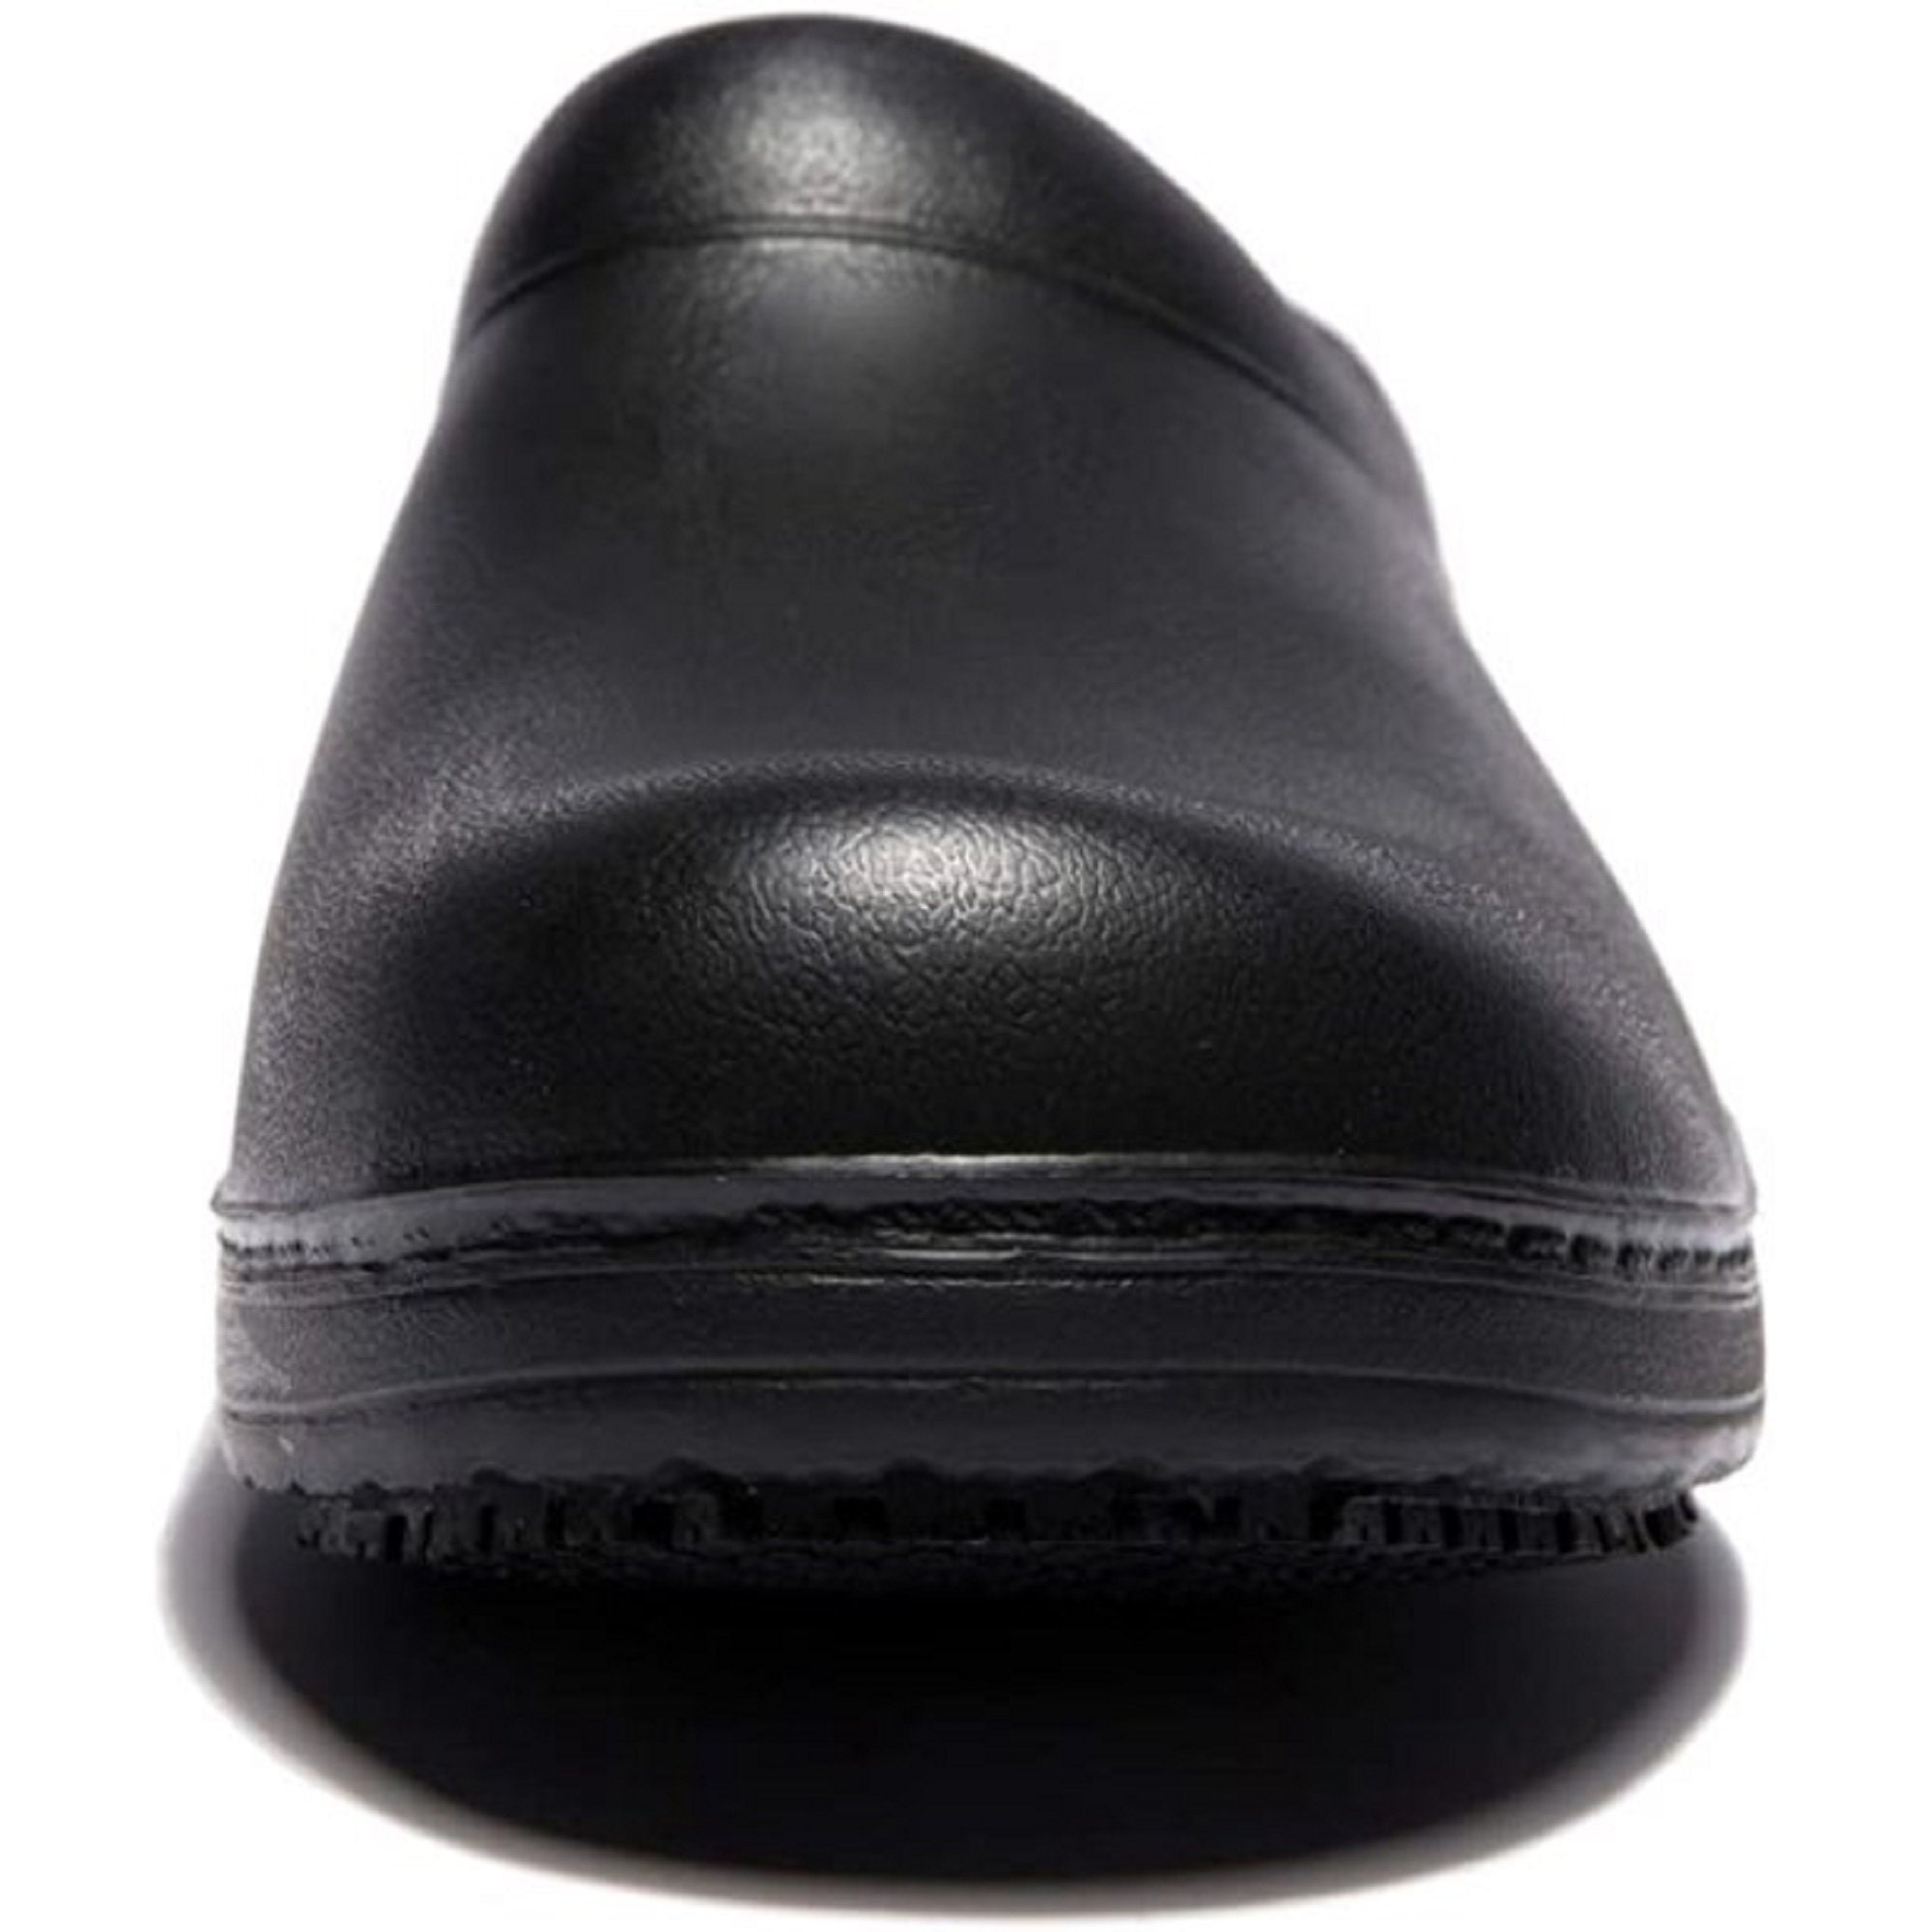 GOYOMA Black Non-slip chef shoes men/women kitchen safety | Etsy